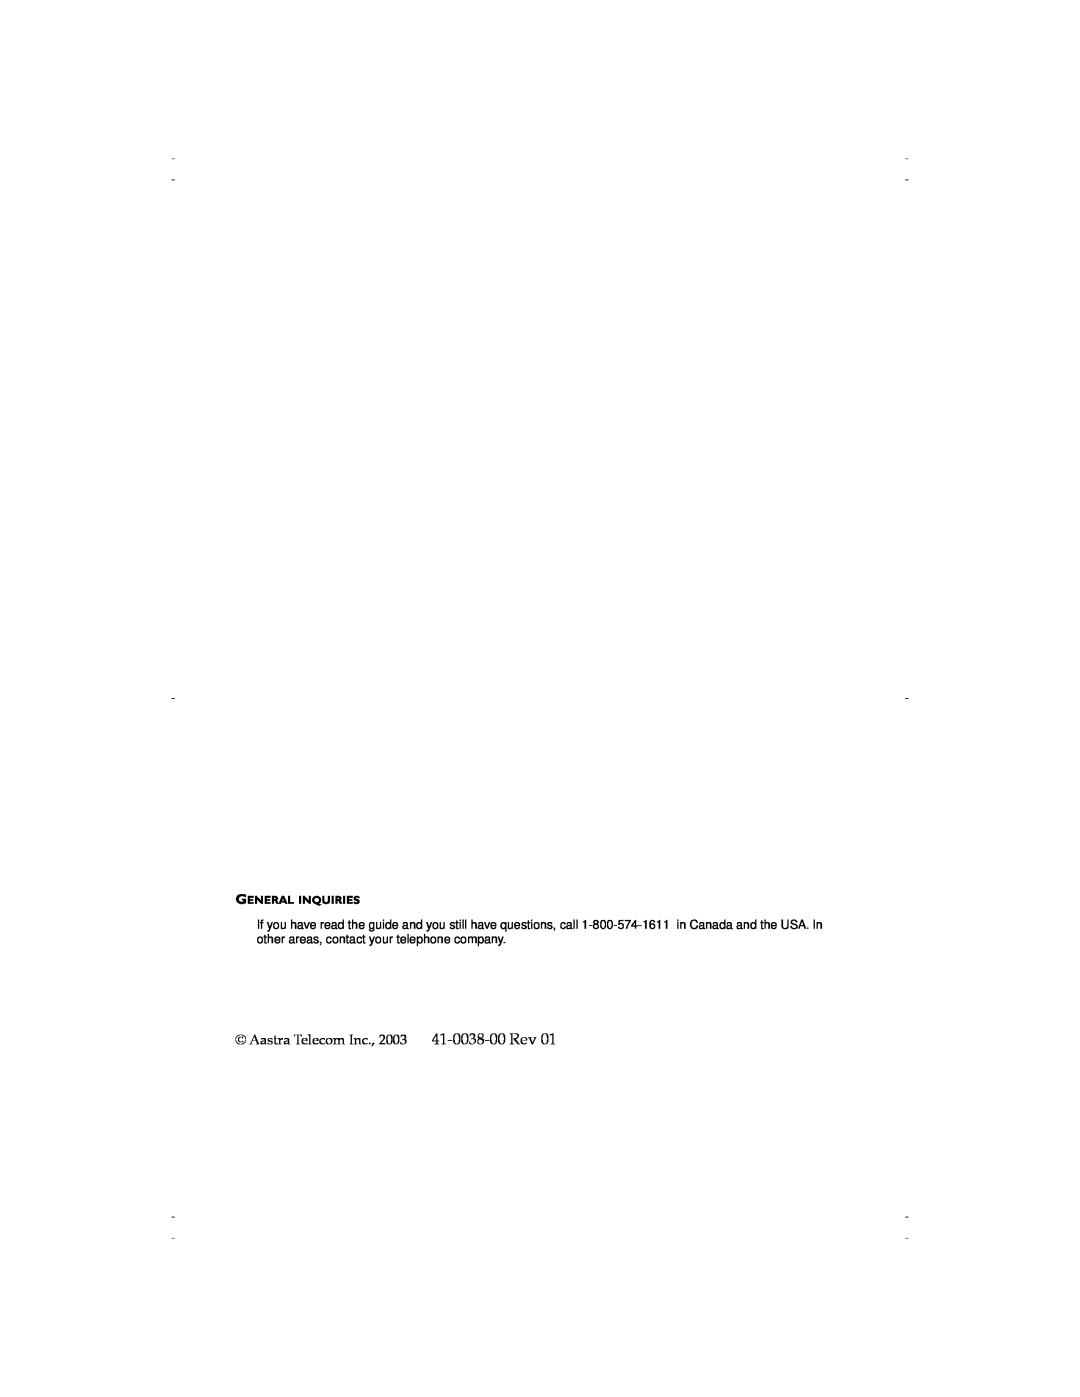 Aastra Telecom 9116 manual Aastra Telecom Inc., 2003 41-0038-00 Rev, General Inquiries 